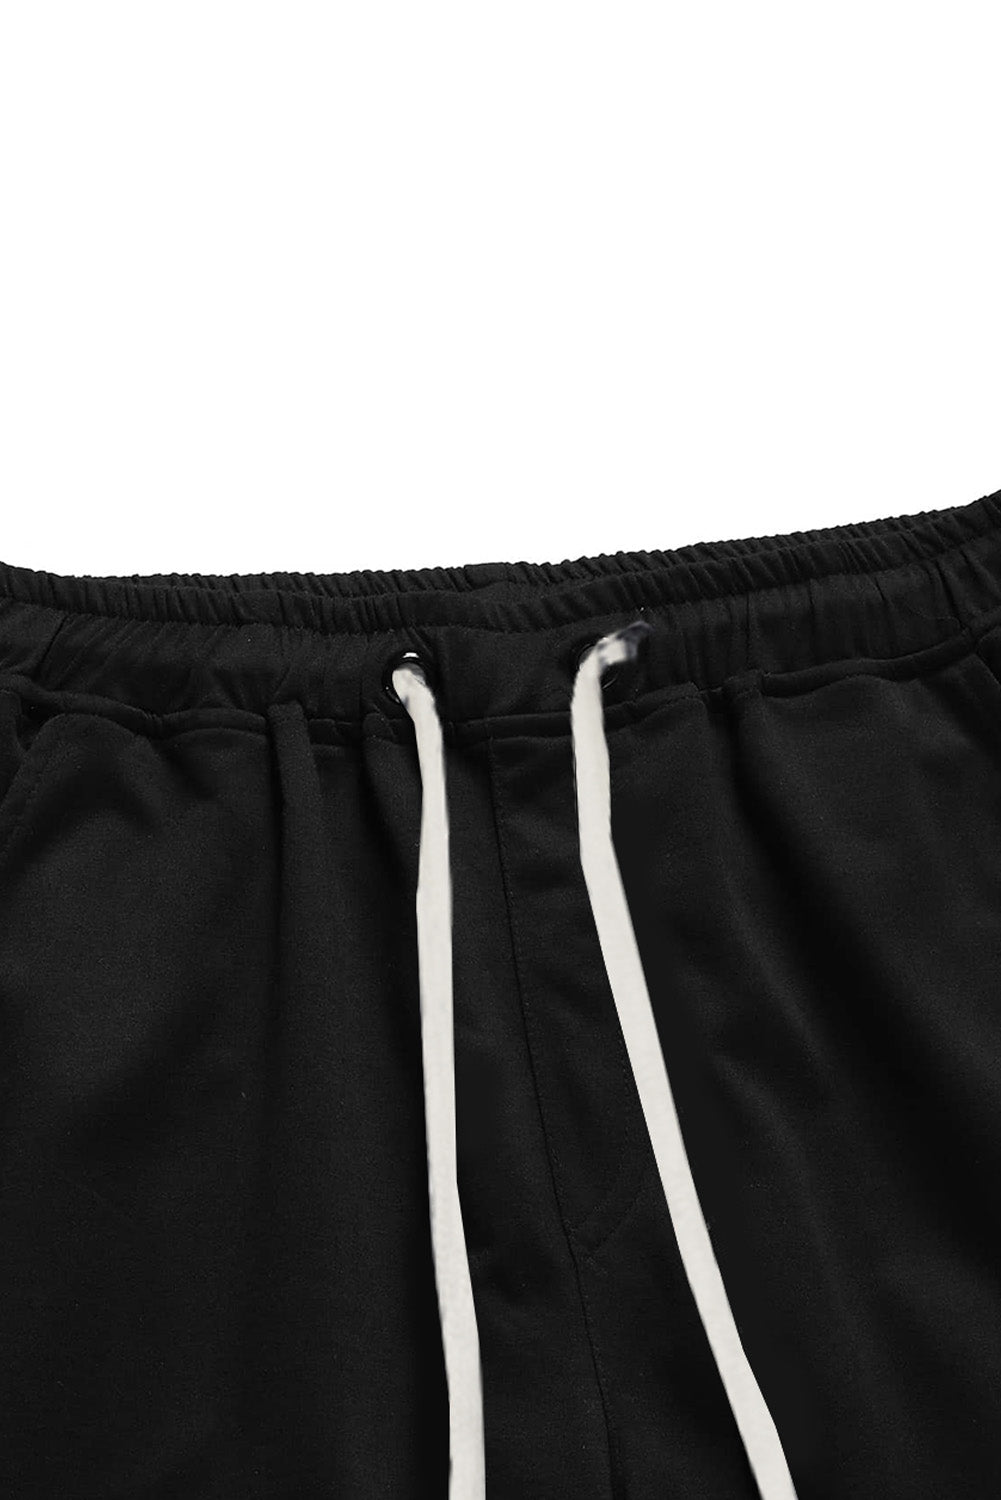 Black LET'S GO Graphic Print Drawstring Waist Men's Sweatpants Men's Pants JT's Designer Fashion